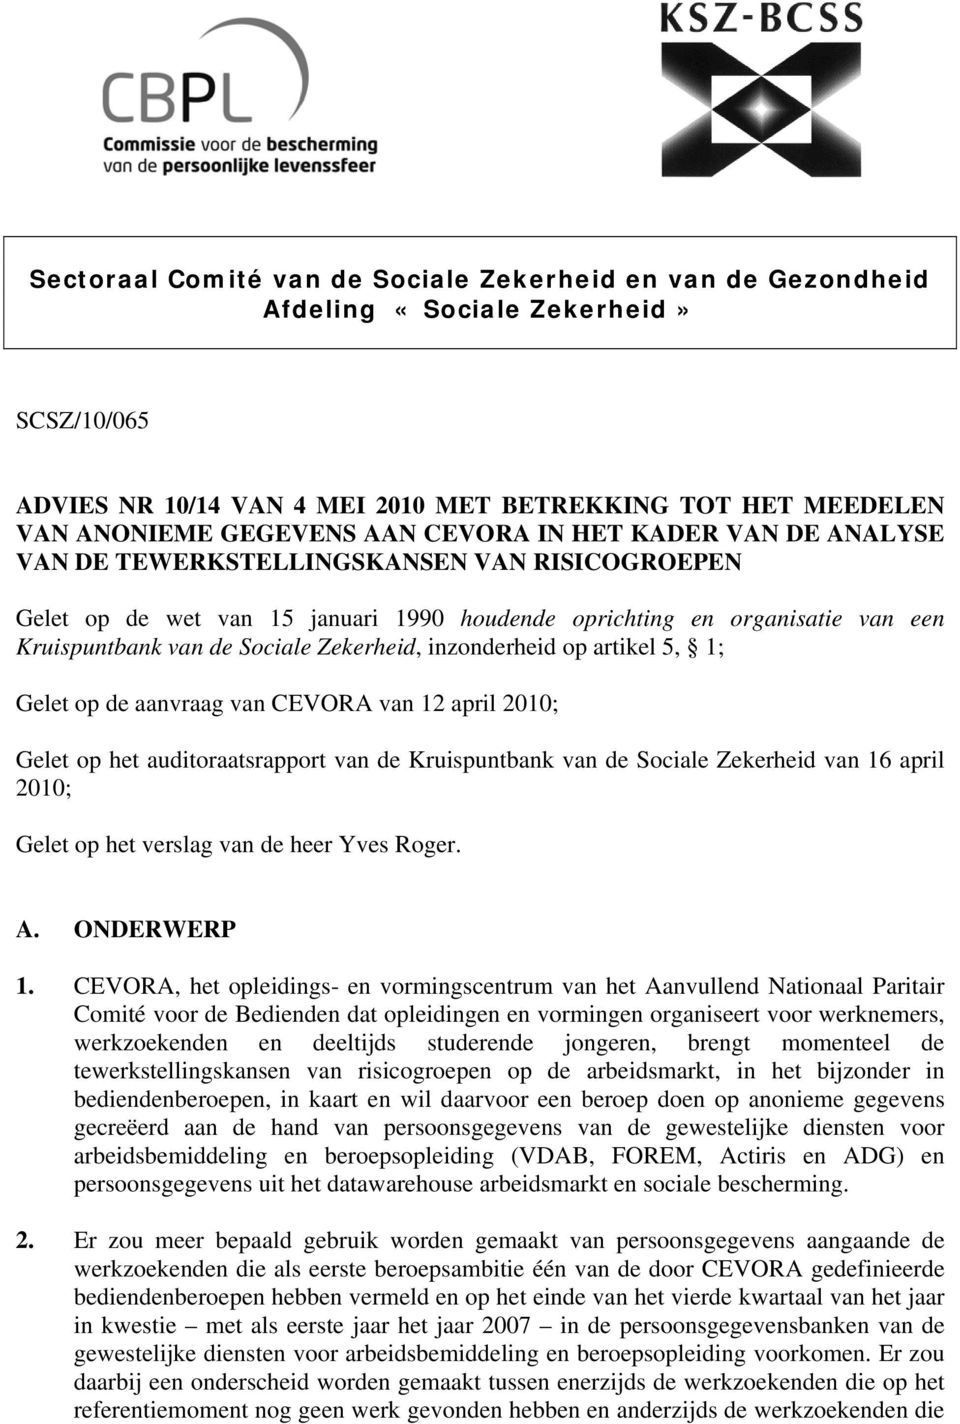 inzonderheid op artikel 5, 1; Gelet op de aanvraag van CEVORA van 12 april 2010; Gelet op het auditoraatsrapport van de Kruispuntbank van de Sociale Zekerheid van 16 april 2010; Gelet op het verslag